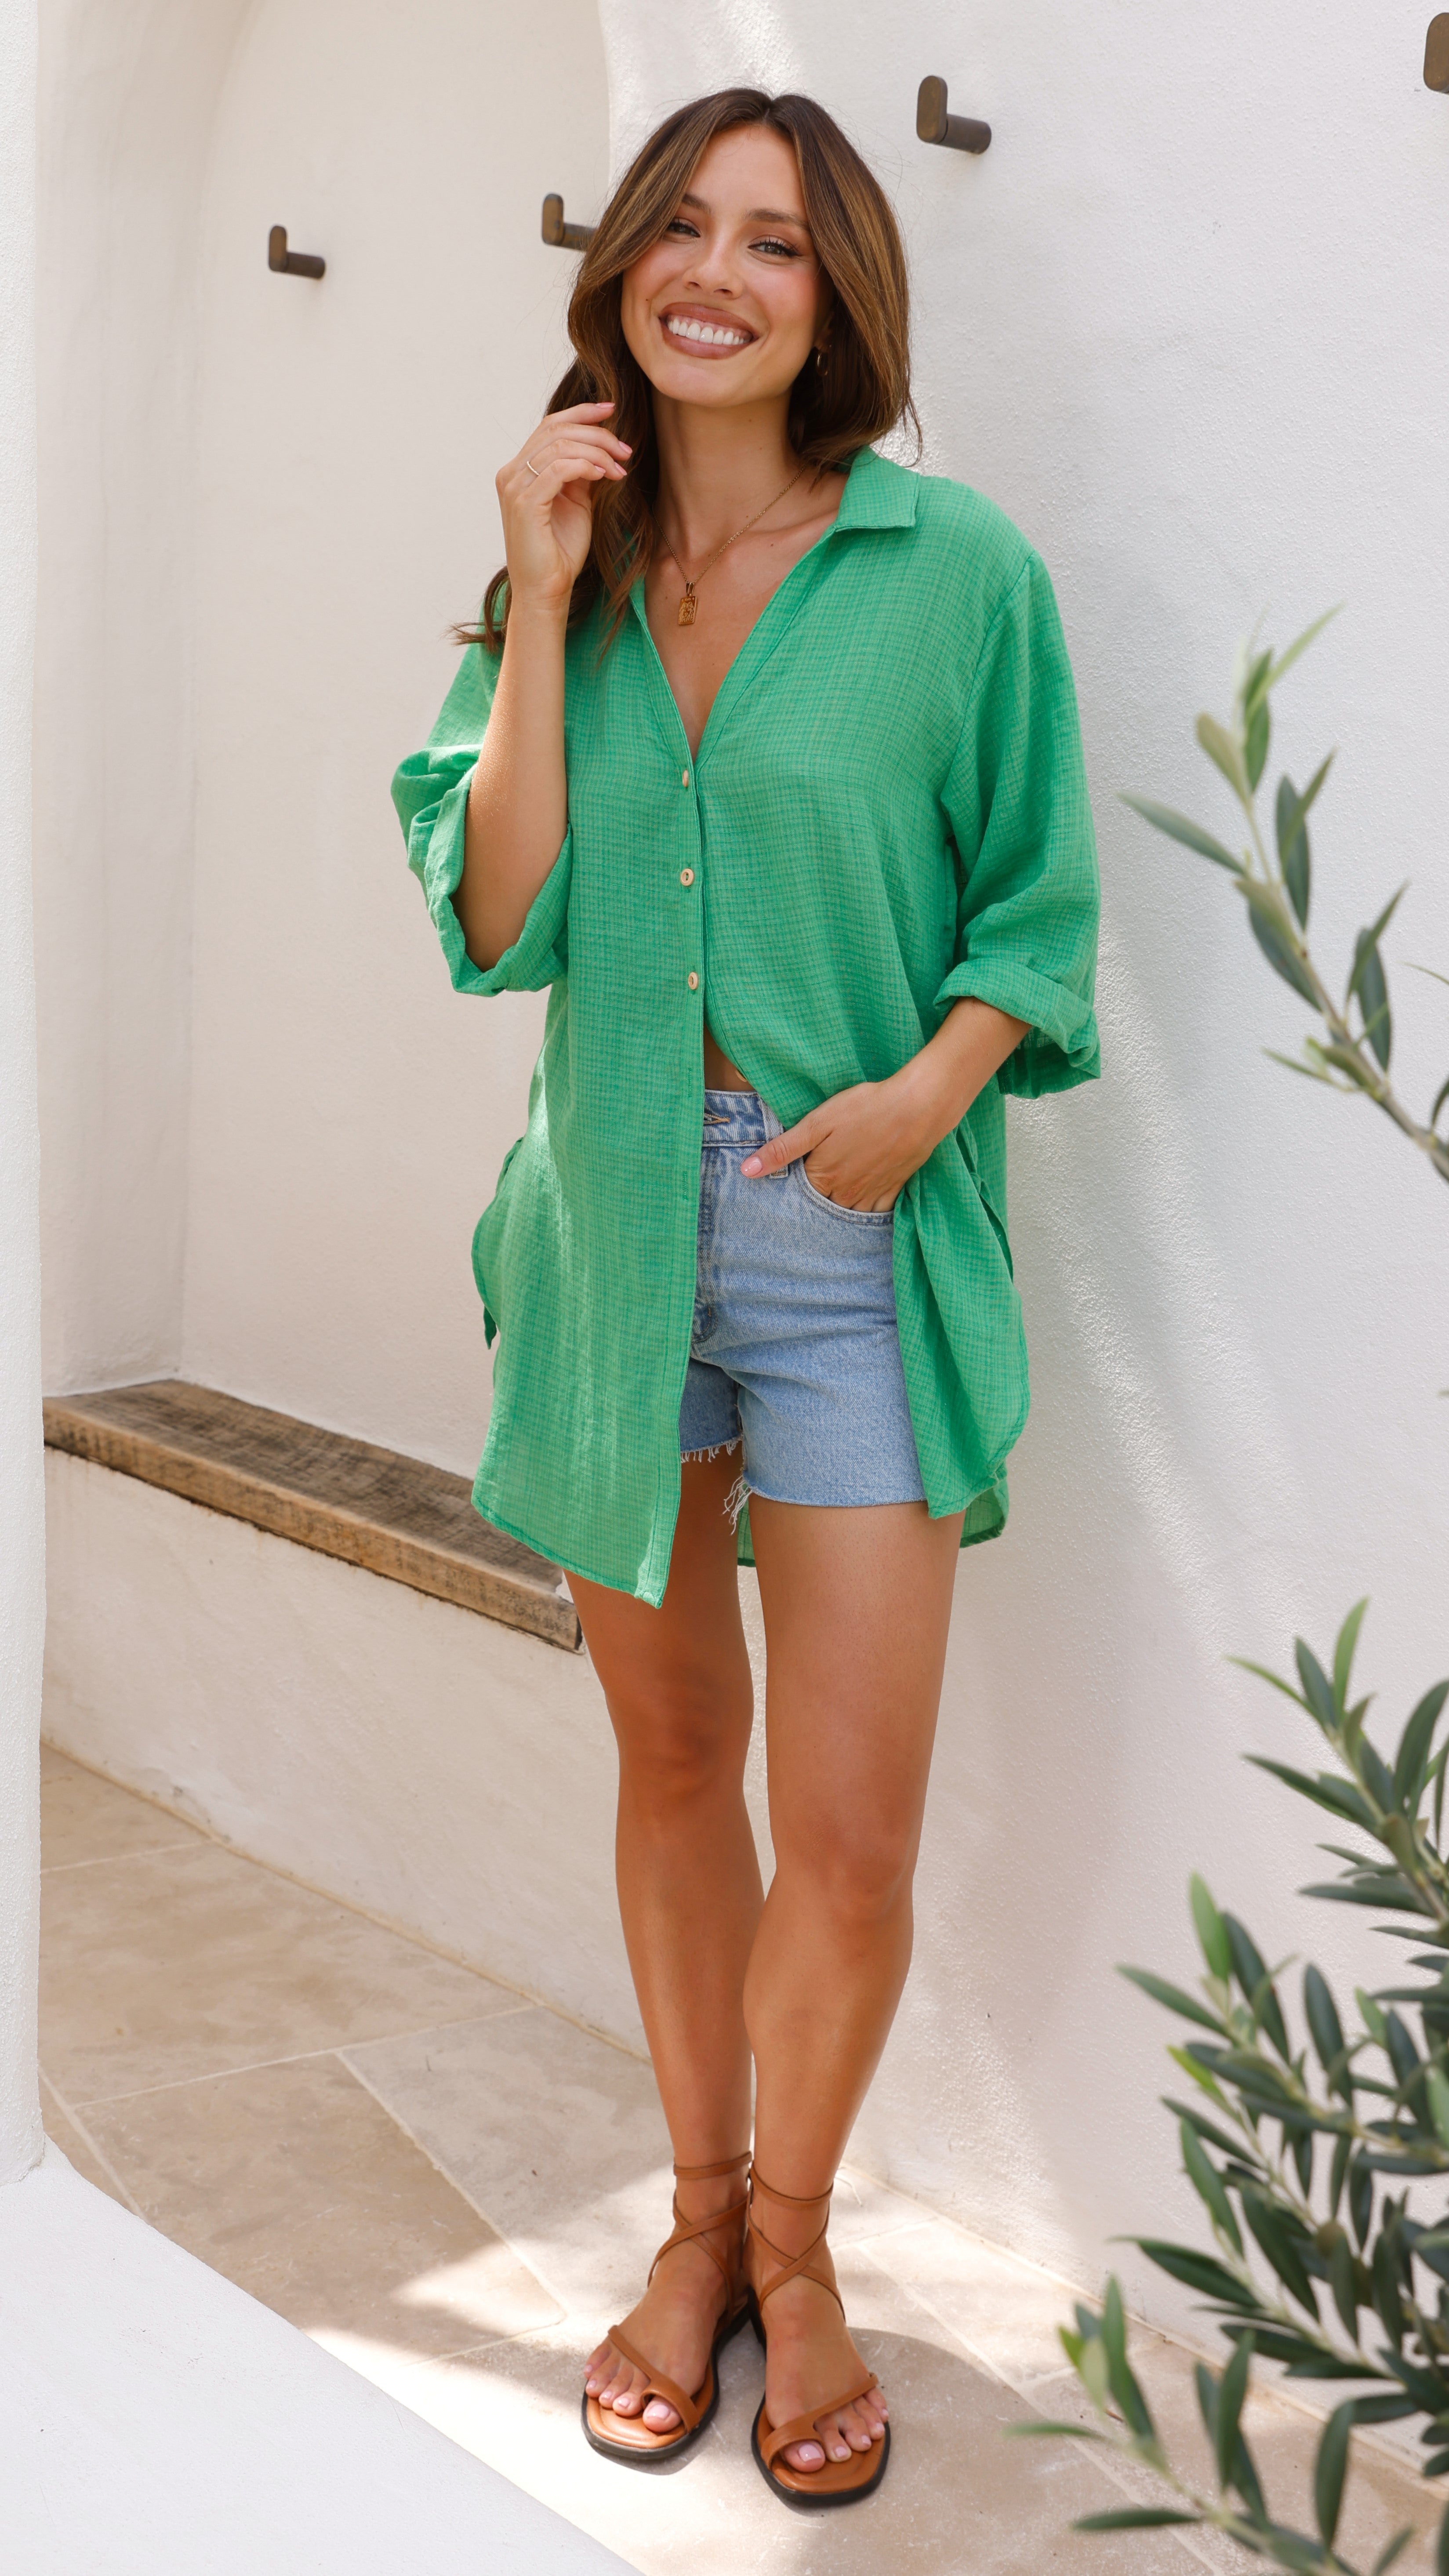 Vesper Beach Shirt - Green